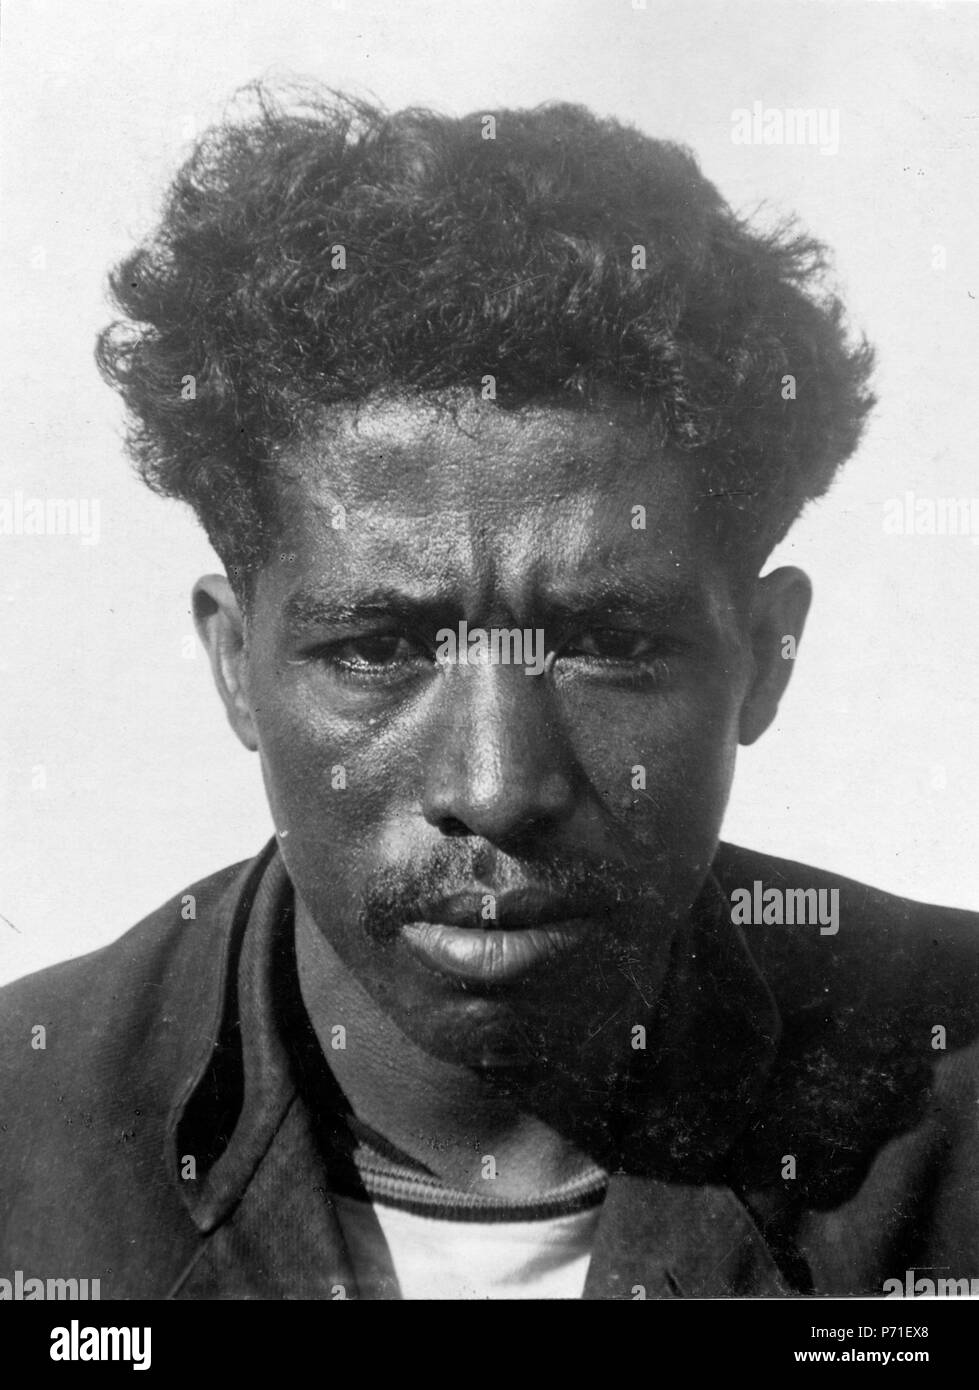 39 Majunga, n.v. Madagaskar. En face- och av profilbilder Tauanarivo-hova de l'homme. Mahajanga - SMVK - 001720 Banque D'Images